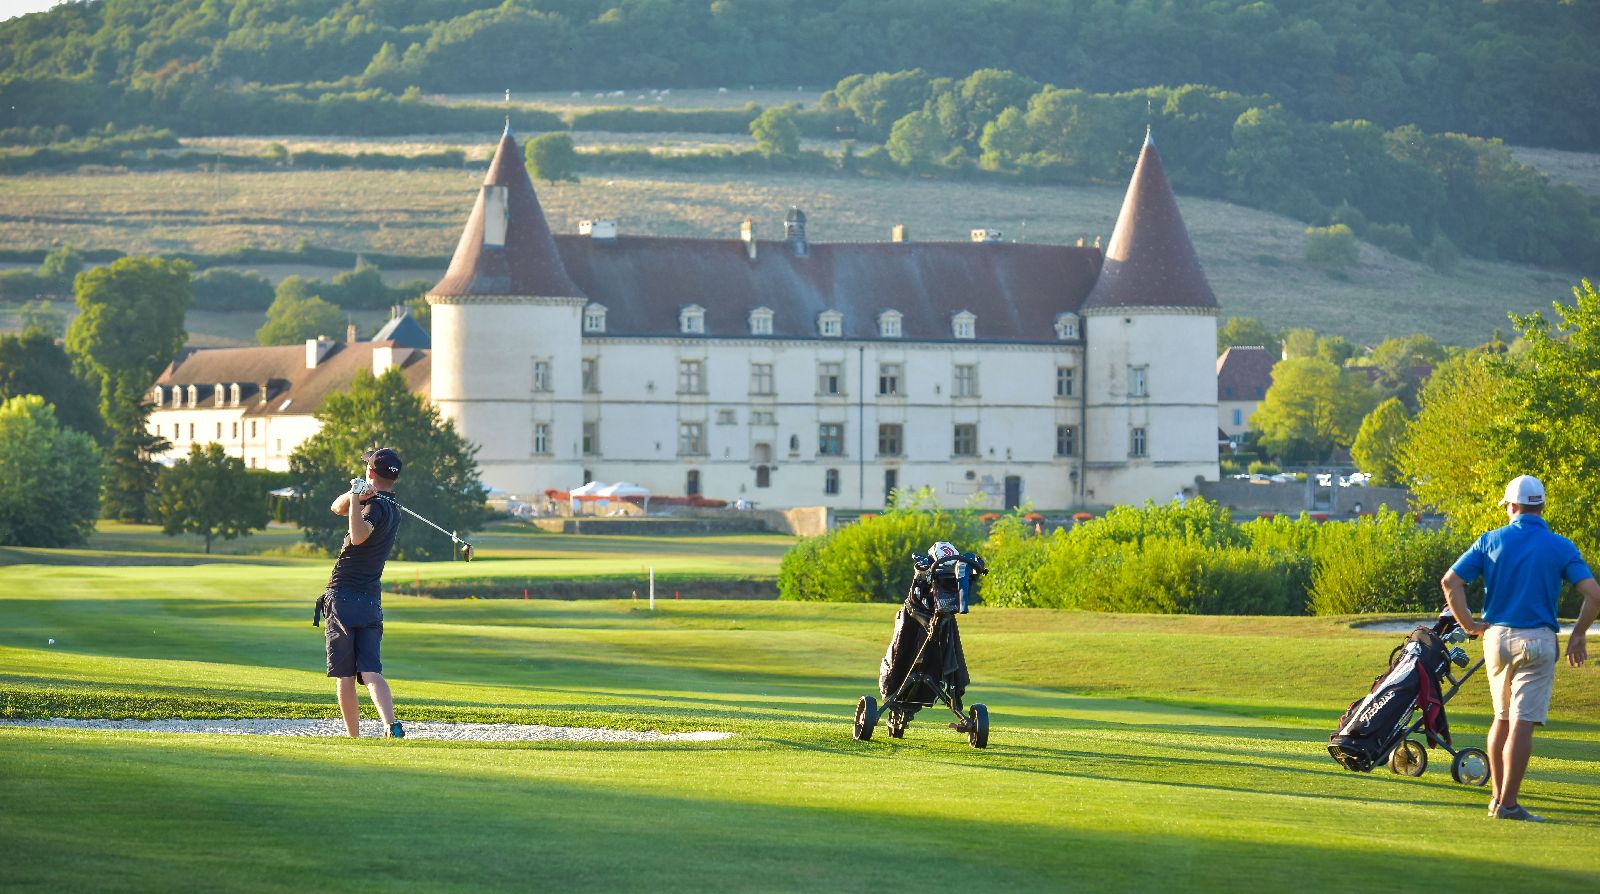 golf-expedition-golf-reis-Frankrijk-Bourgogne-Chateau-de-Chailly-golfers-golfbaan-personen-golfstick-golftas.jpg